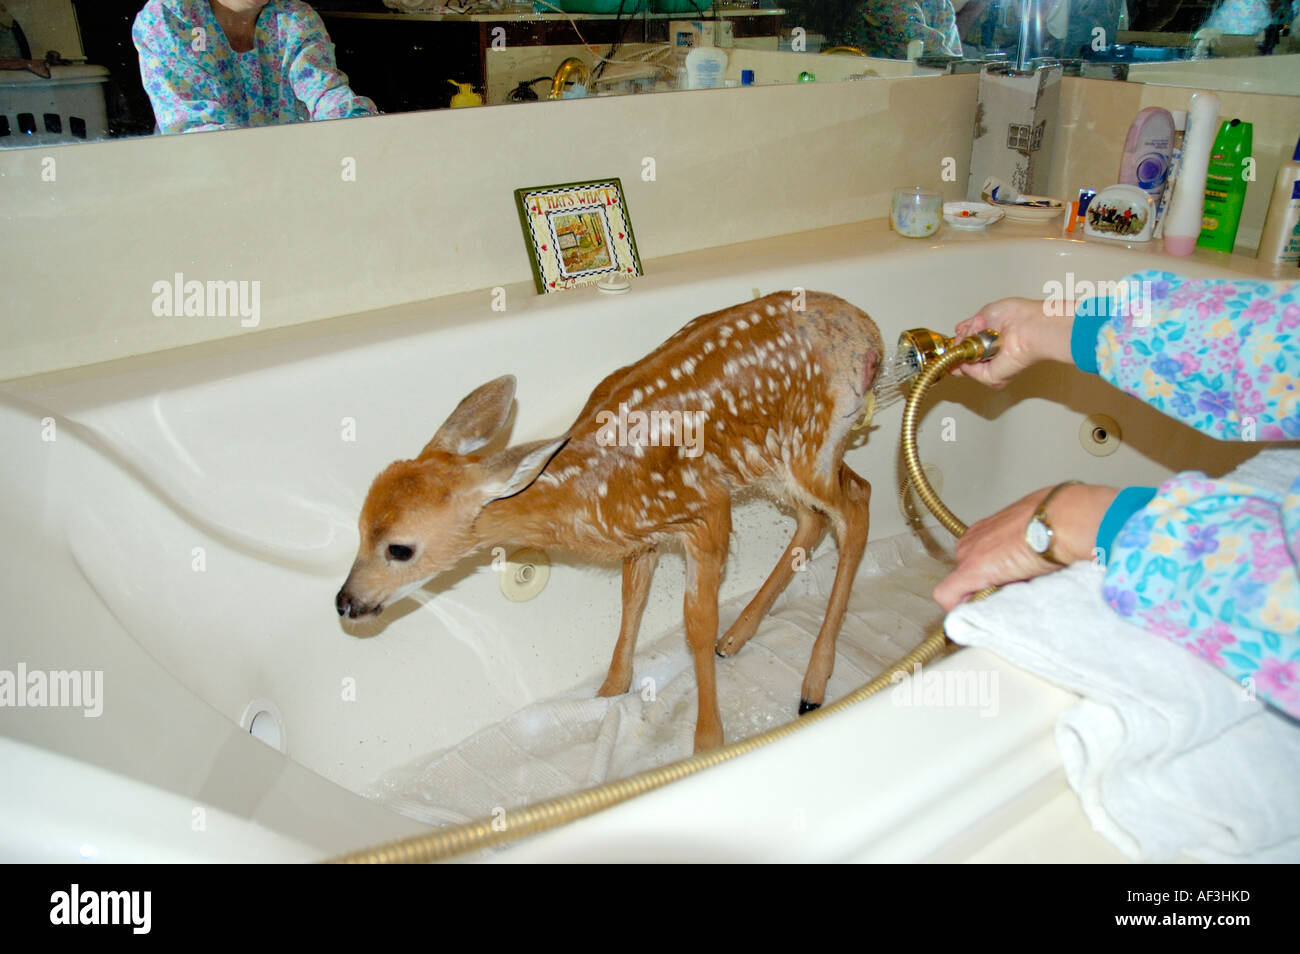 https://c8.alamy.com/comp/AF3HKD/young-deer-fawn-being-bathed-during-rehabilitation-and-medical-treatment-AF3HKD.jpg